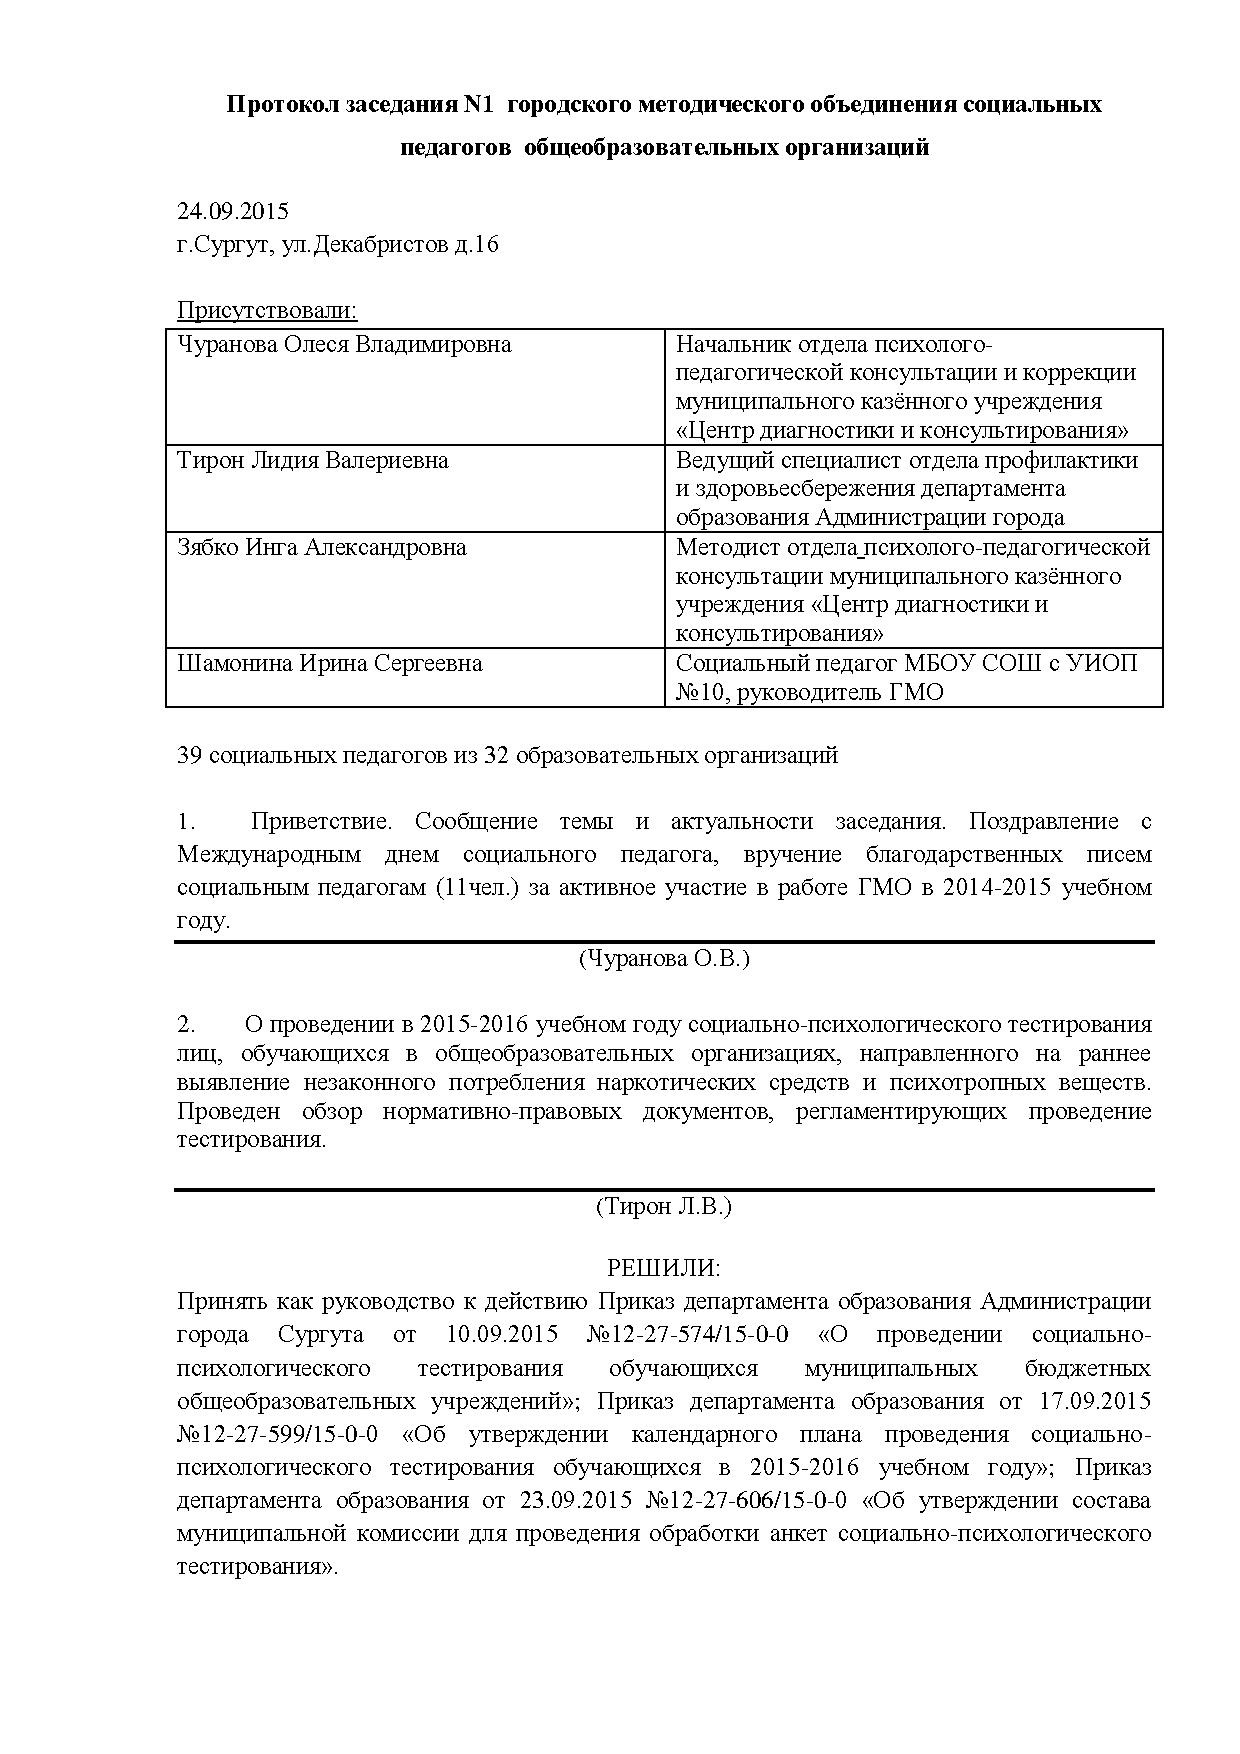 Протокол от 24.09.15.pdf